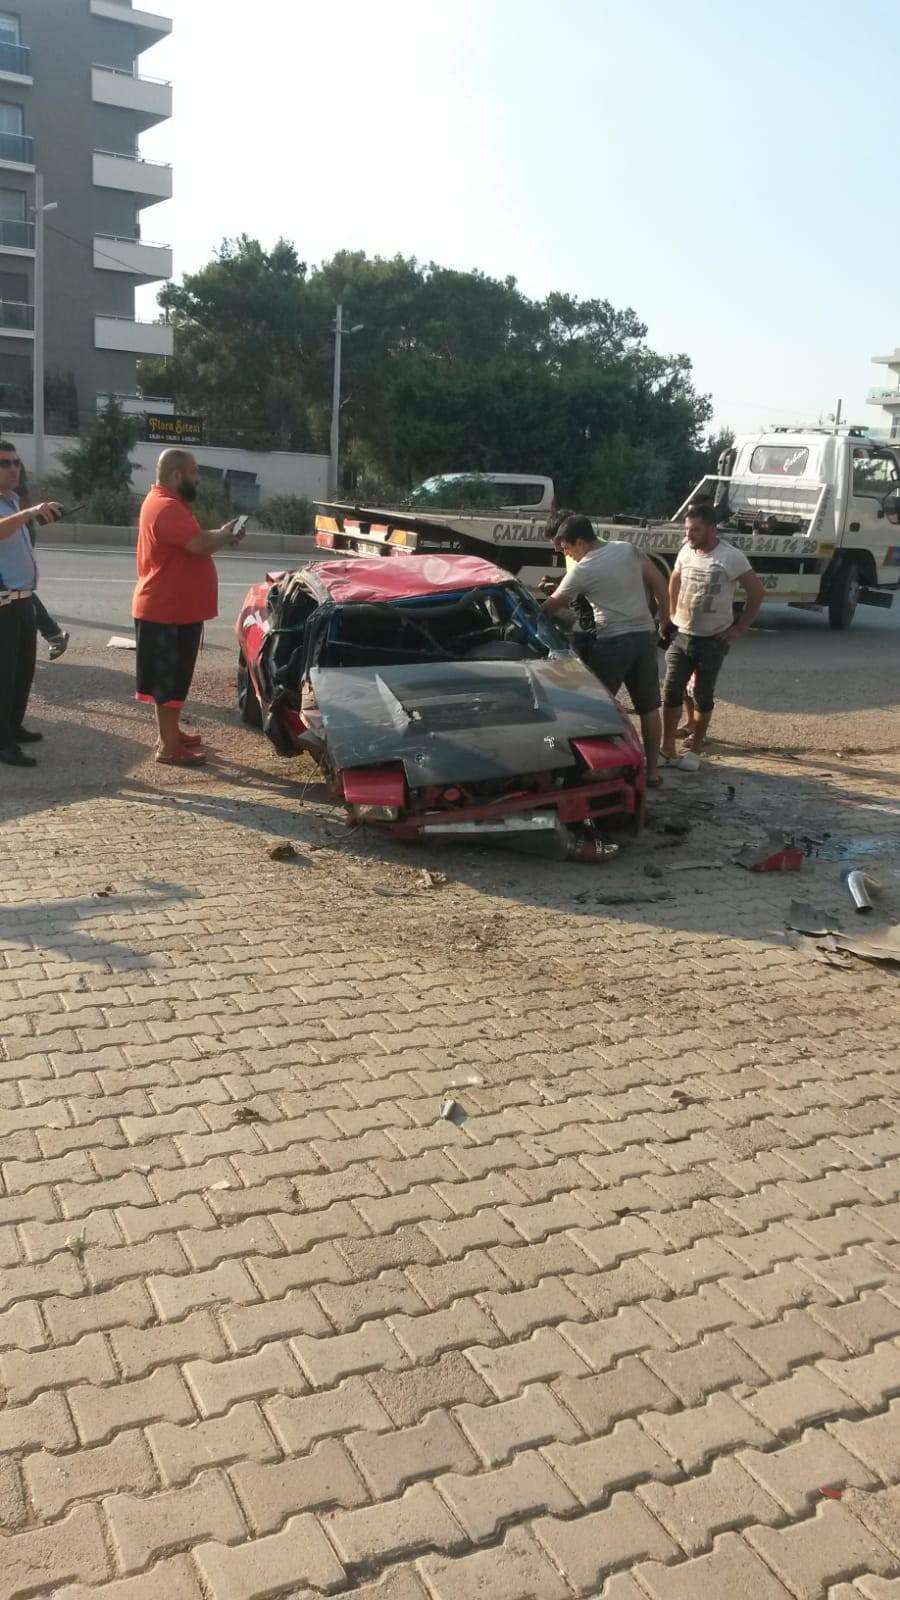 Takla atan aracın üstünden geçtiği feci kazadan sağ kurtuldu